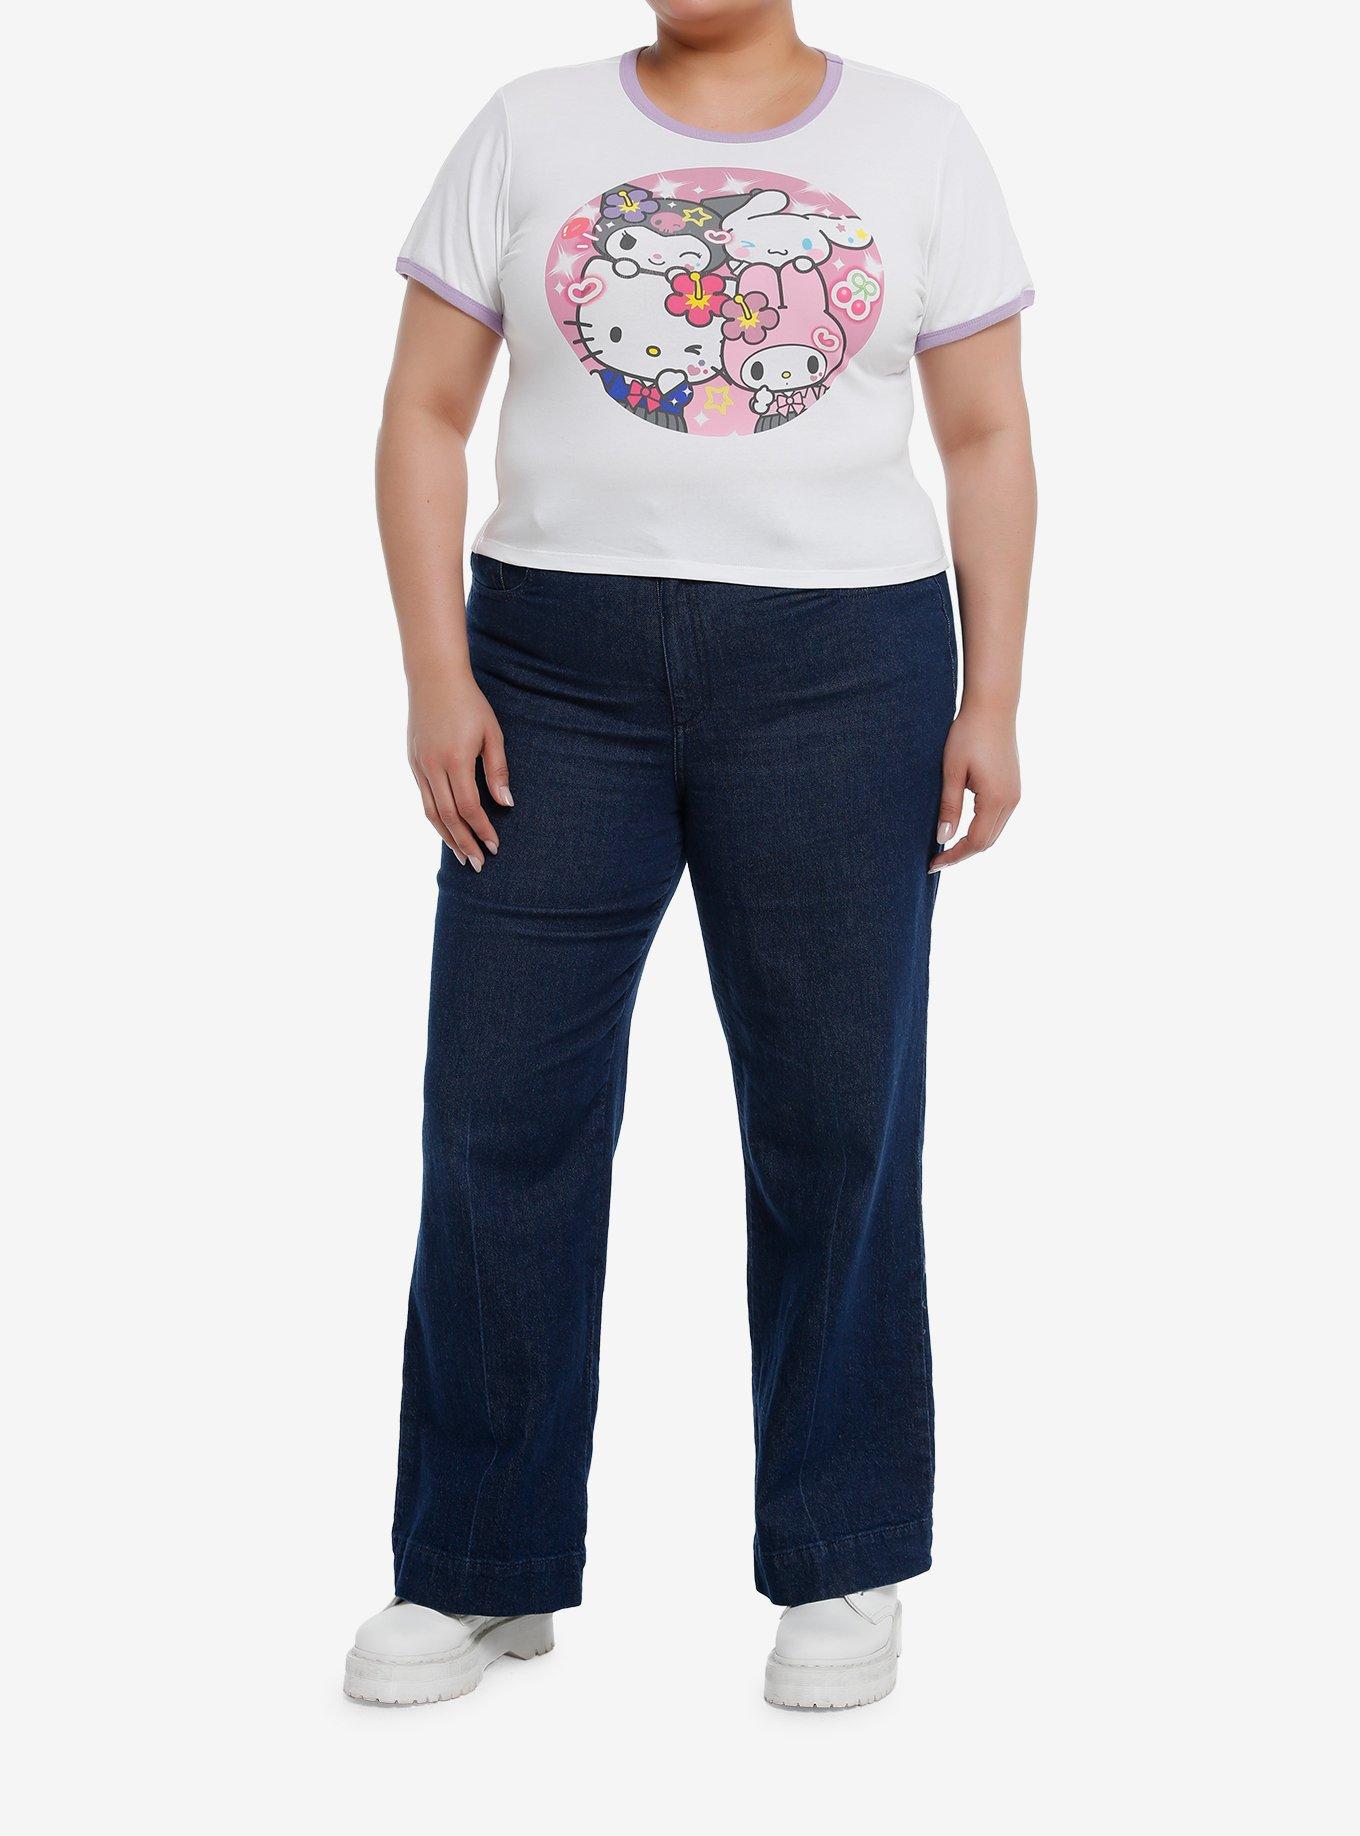 Hello Kitty And Friends Kogyaru Ringer Girls Baby T-Shirt Plus